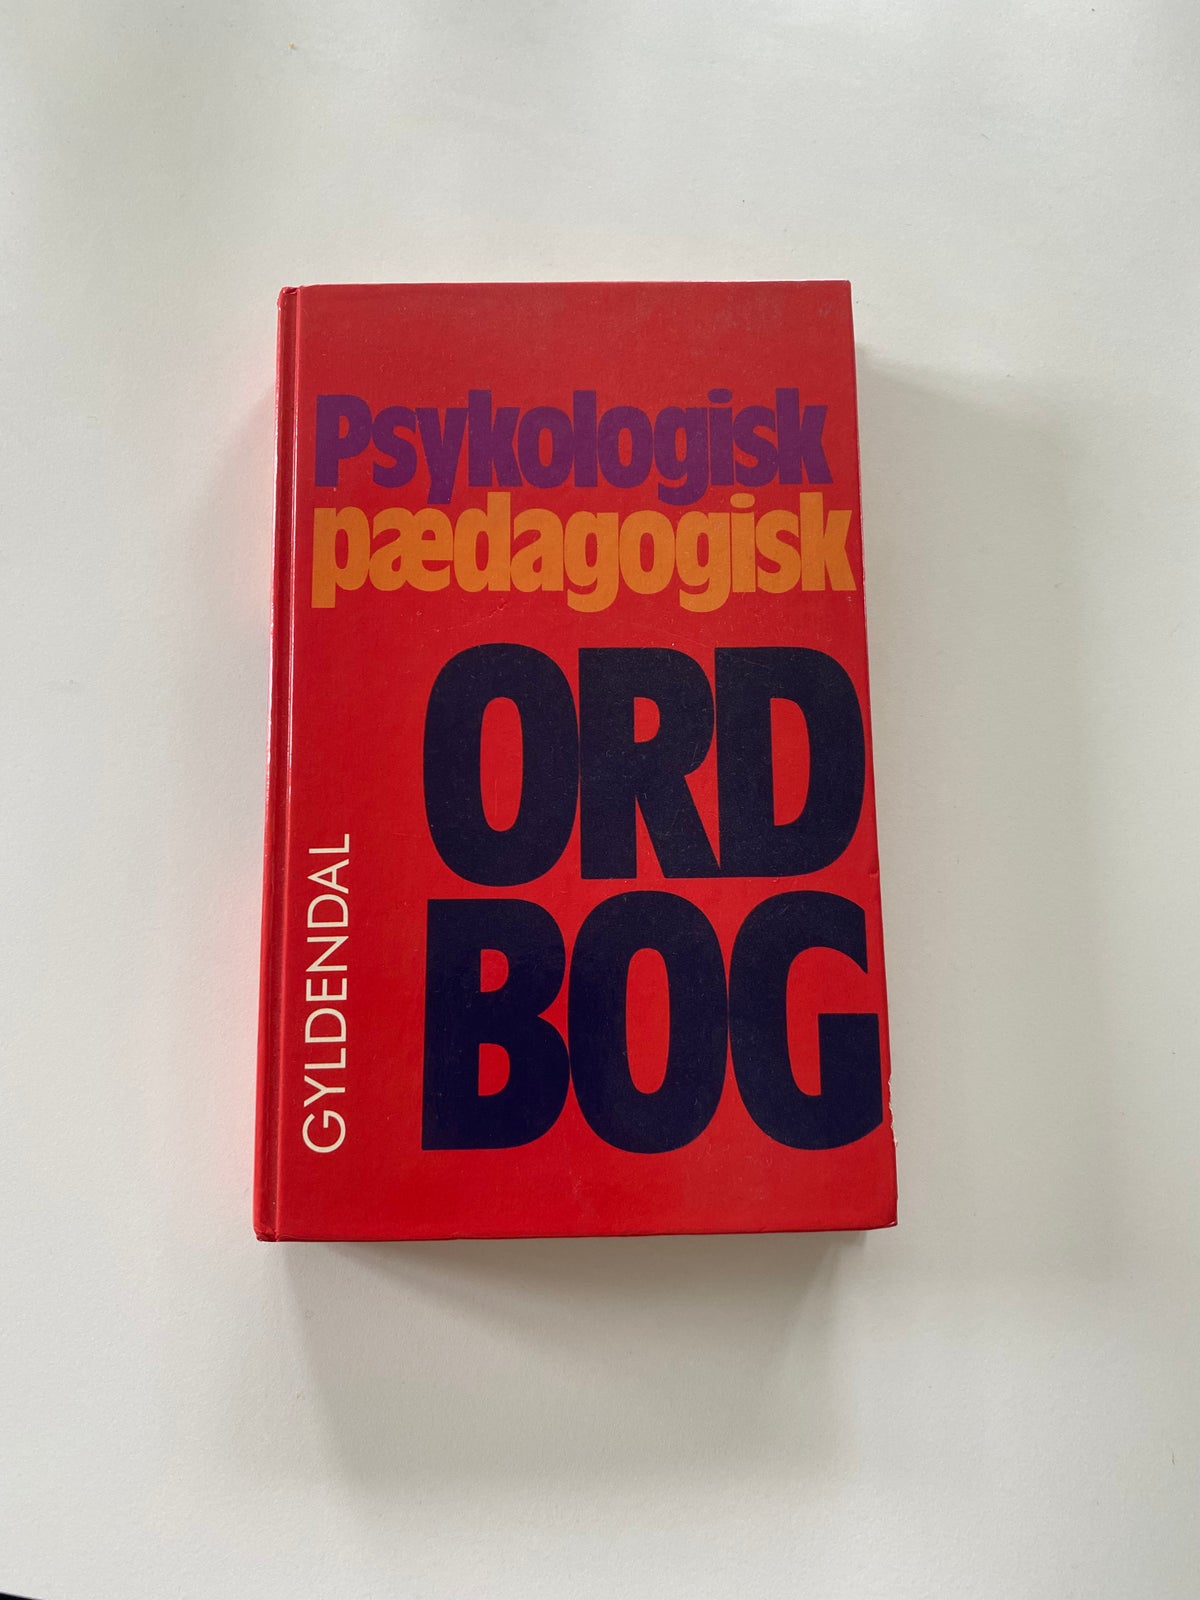 Psykologisk pædagogisk ordbog, Gyldendal